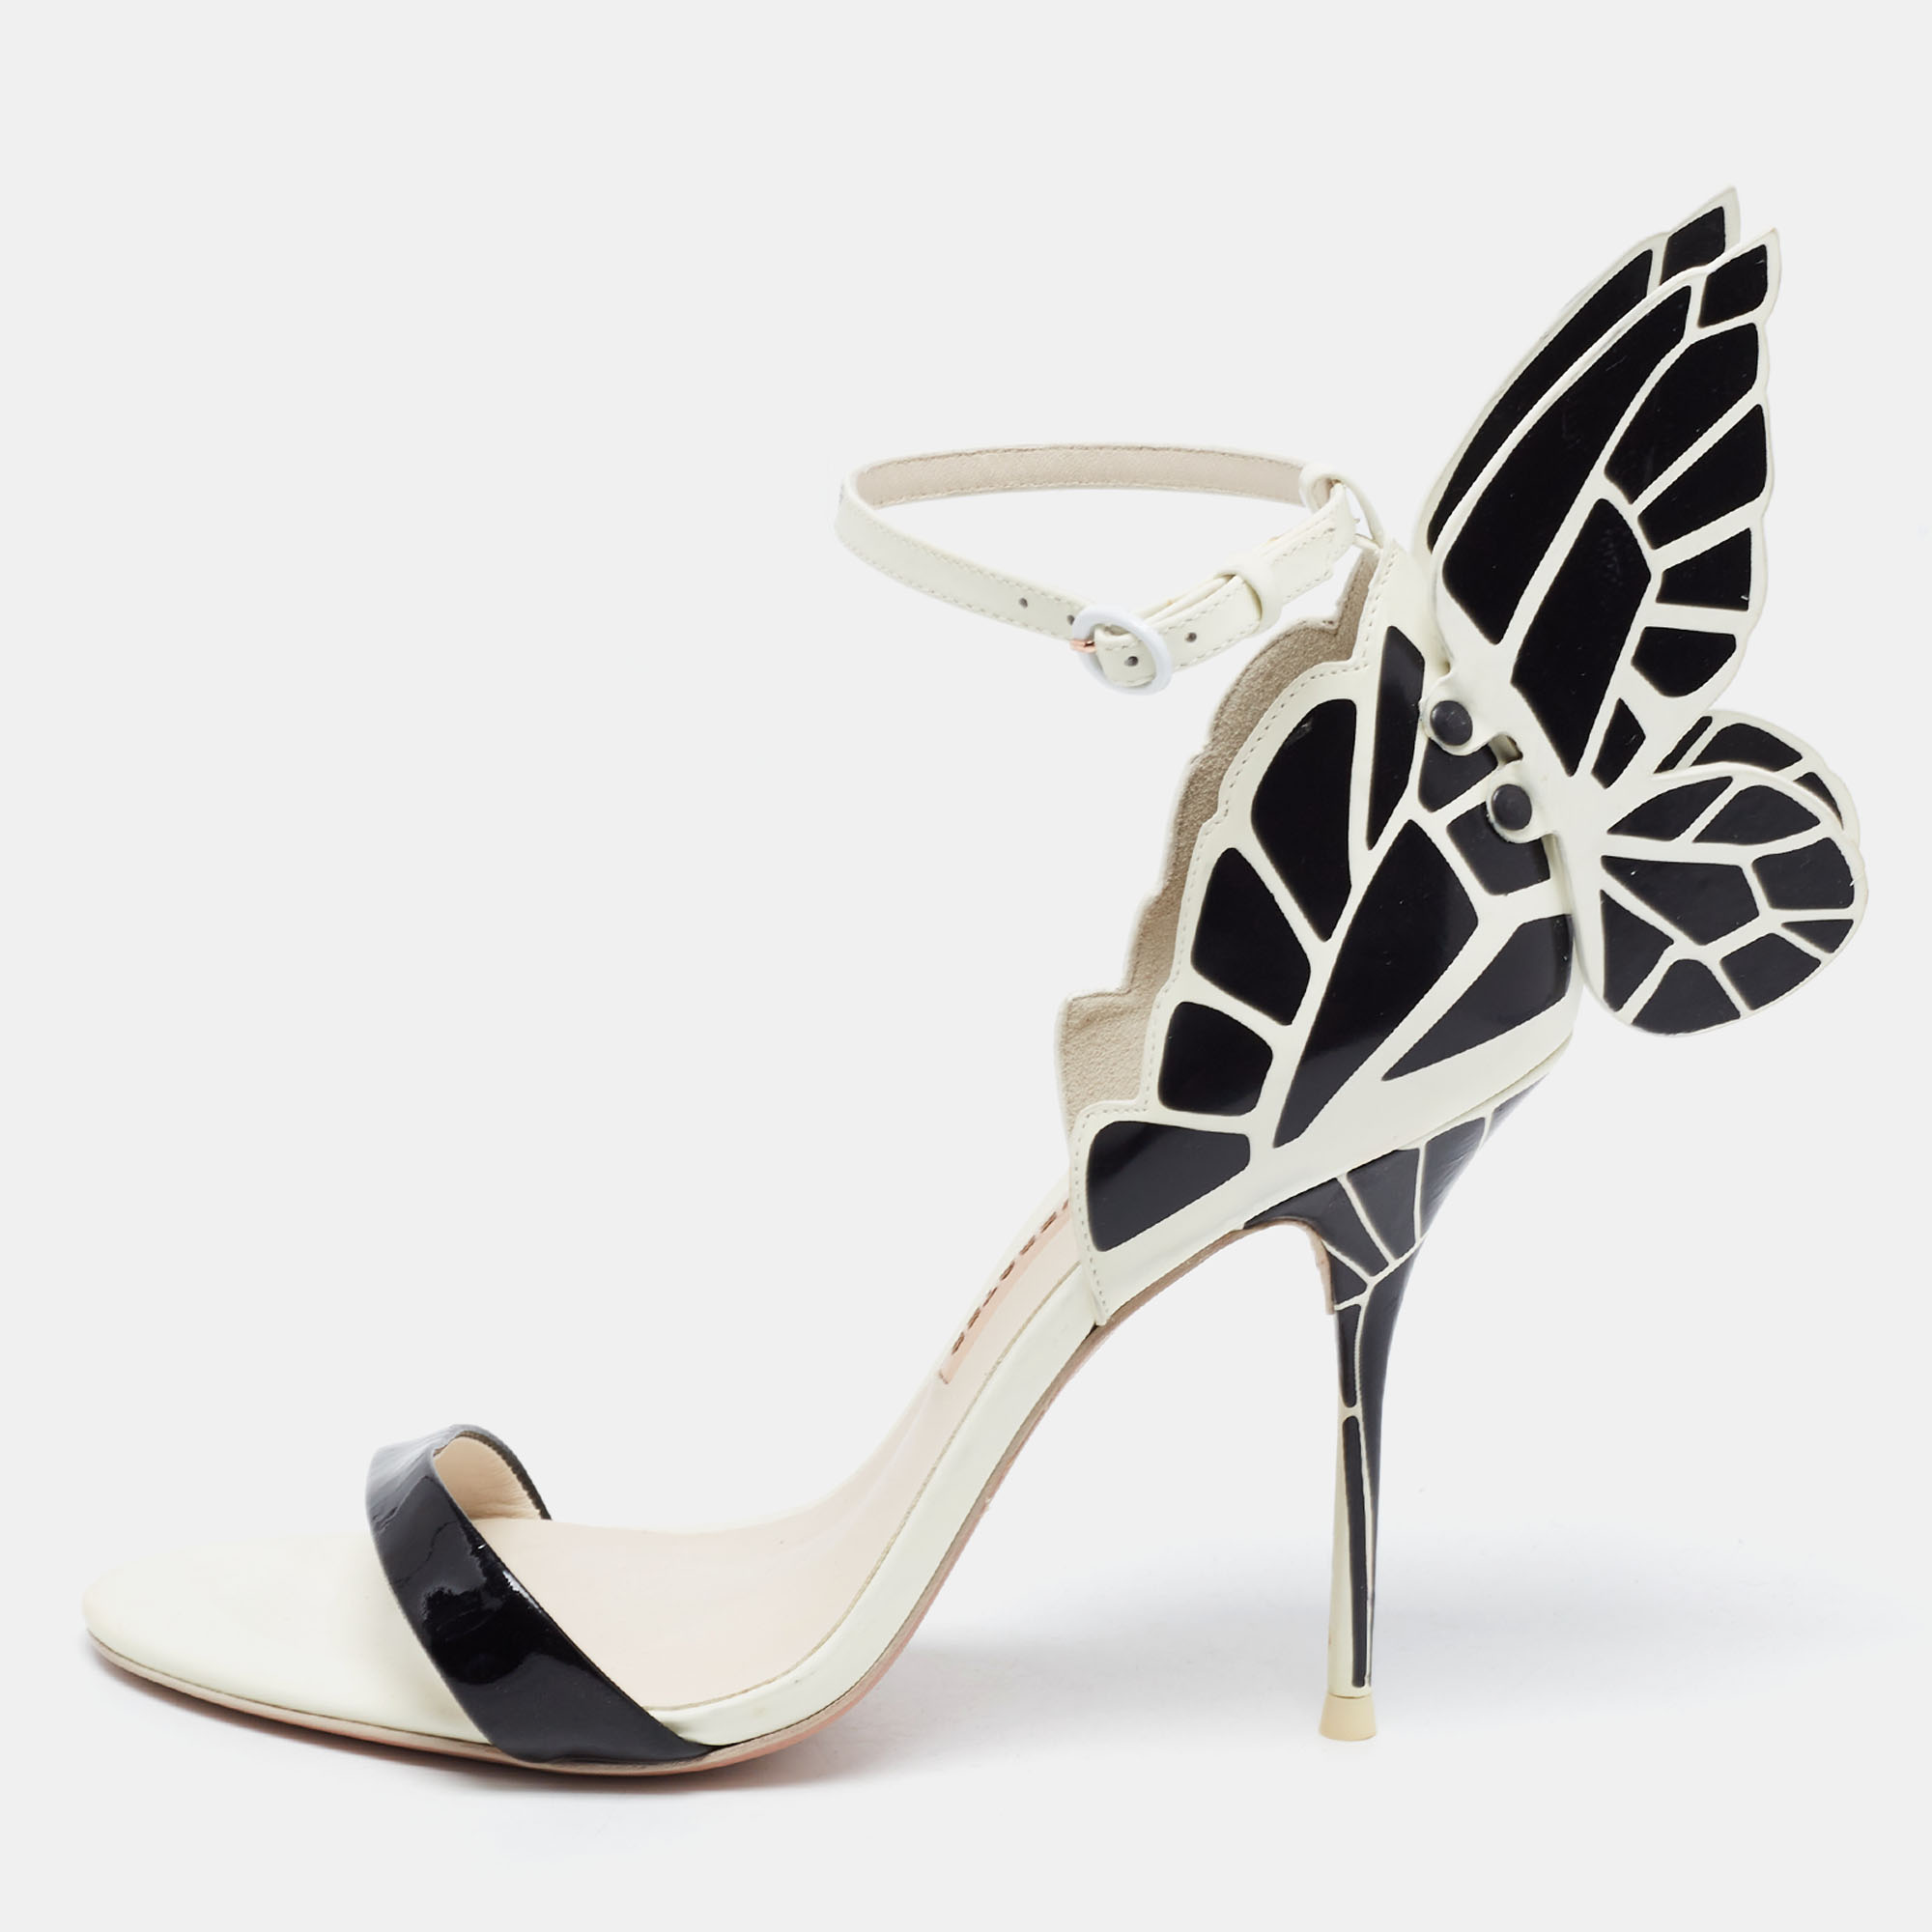 Sophia Webster Black/White Leather Evangeline Ankle Strap Sandals Size 38.5